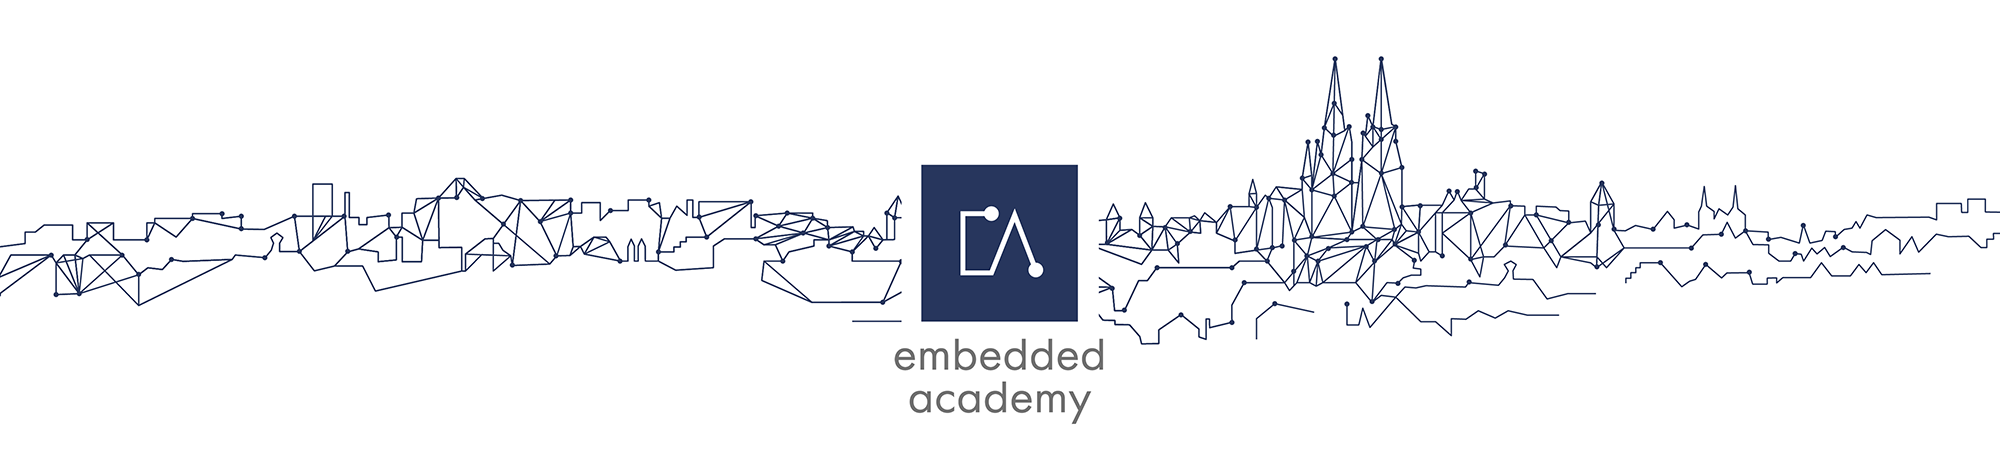 Embedded Academy Logo auf der Regensburger Skyline gezeichnet als Schaltung einer Platine